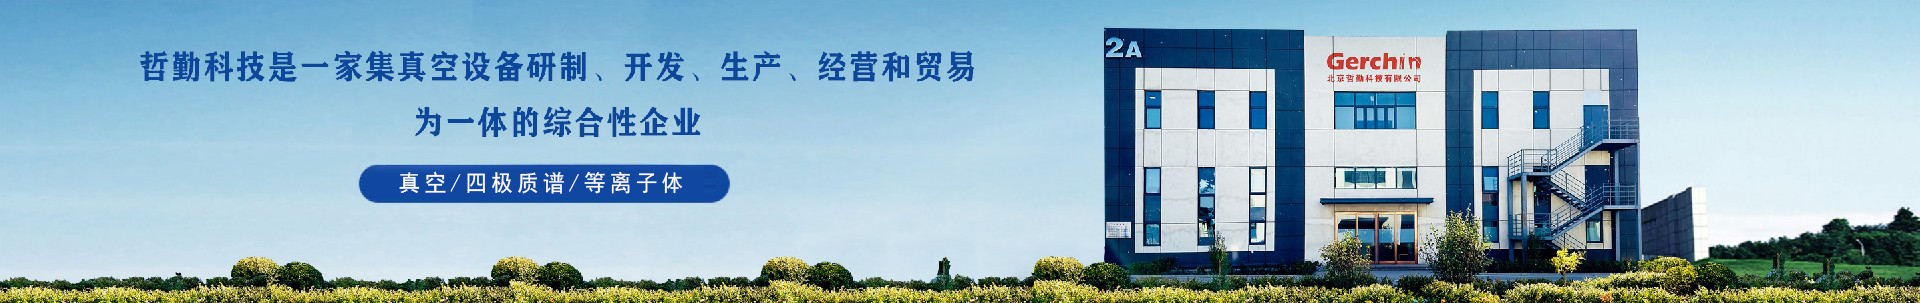 中国光博会-企业新闻-龙8唯一官网科技有限公司